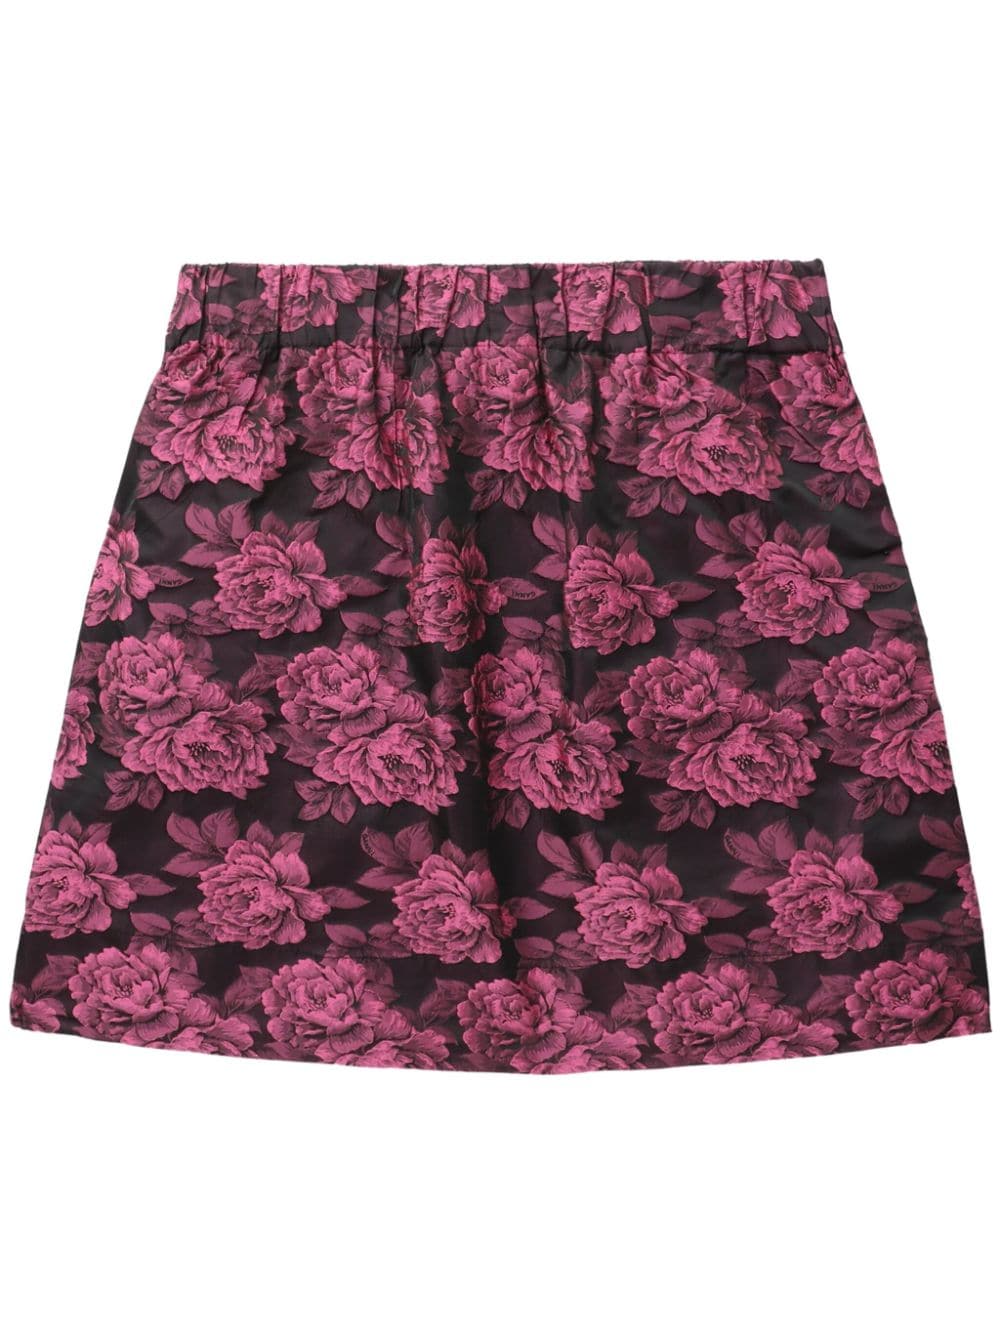 Floral-motif patterned-jacquard miniskirt<BR/><BR/>